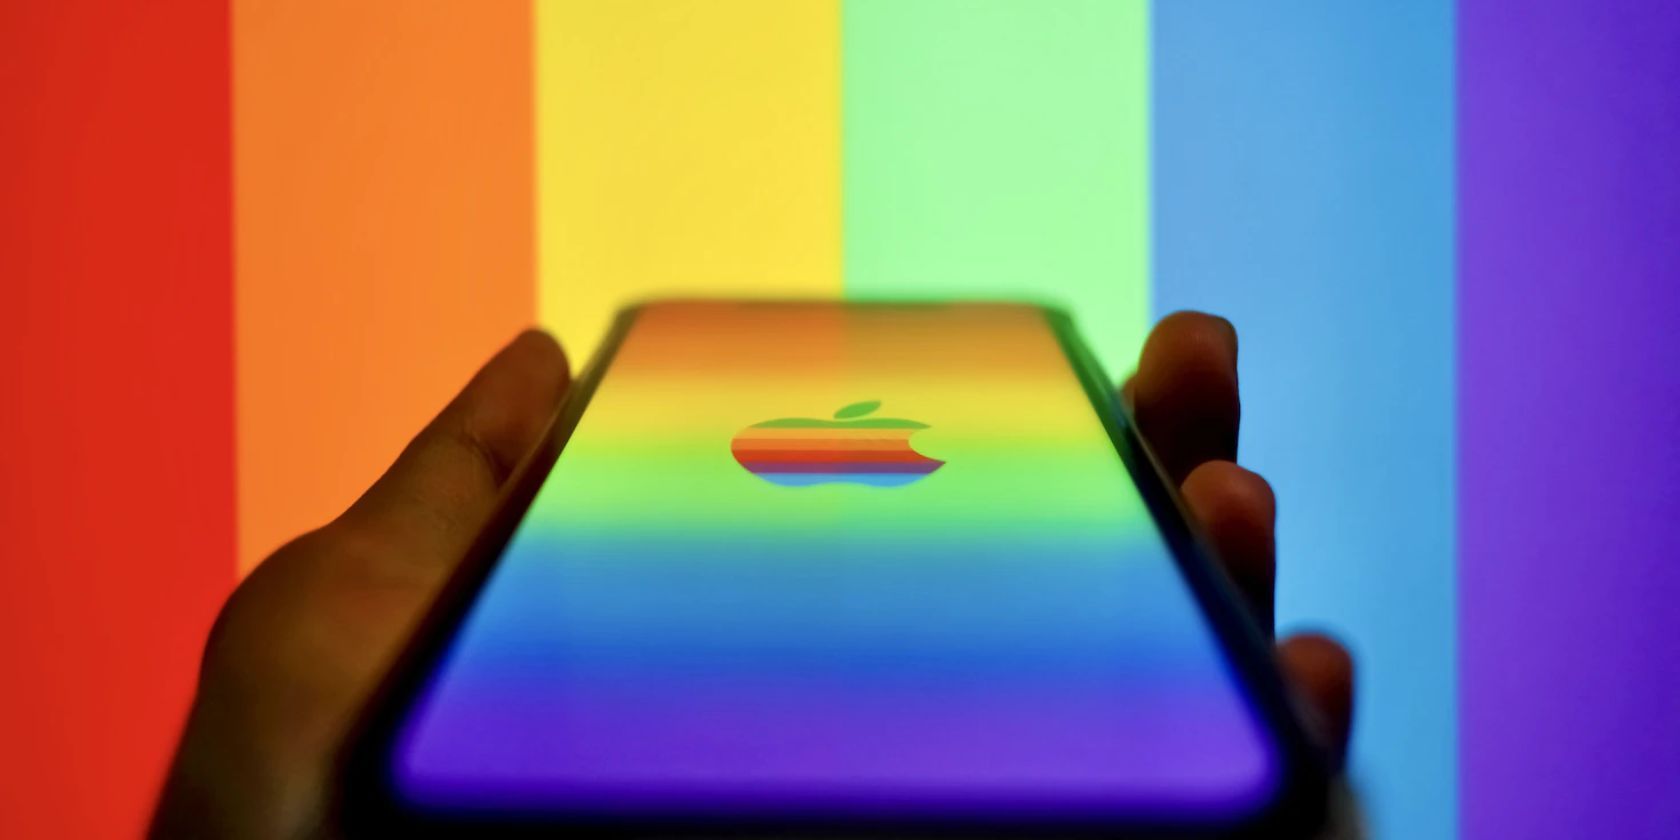 Apple rainbow logo on an iPhone